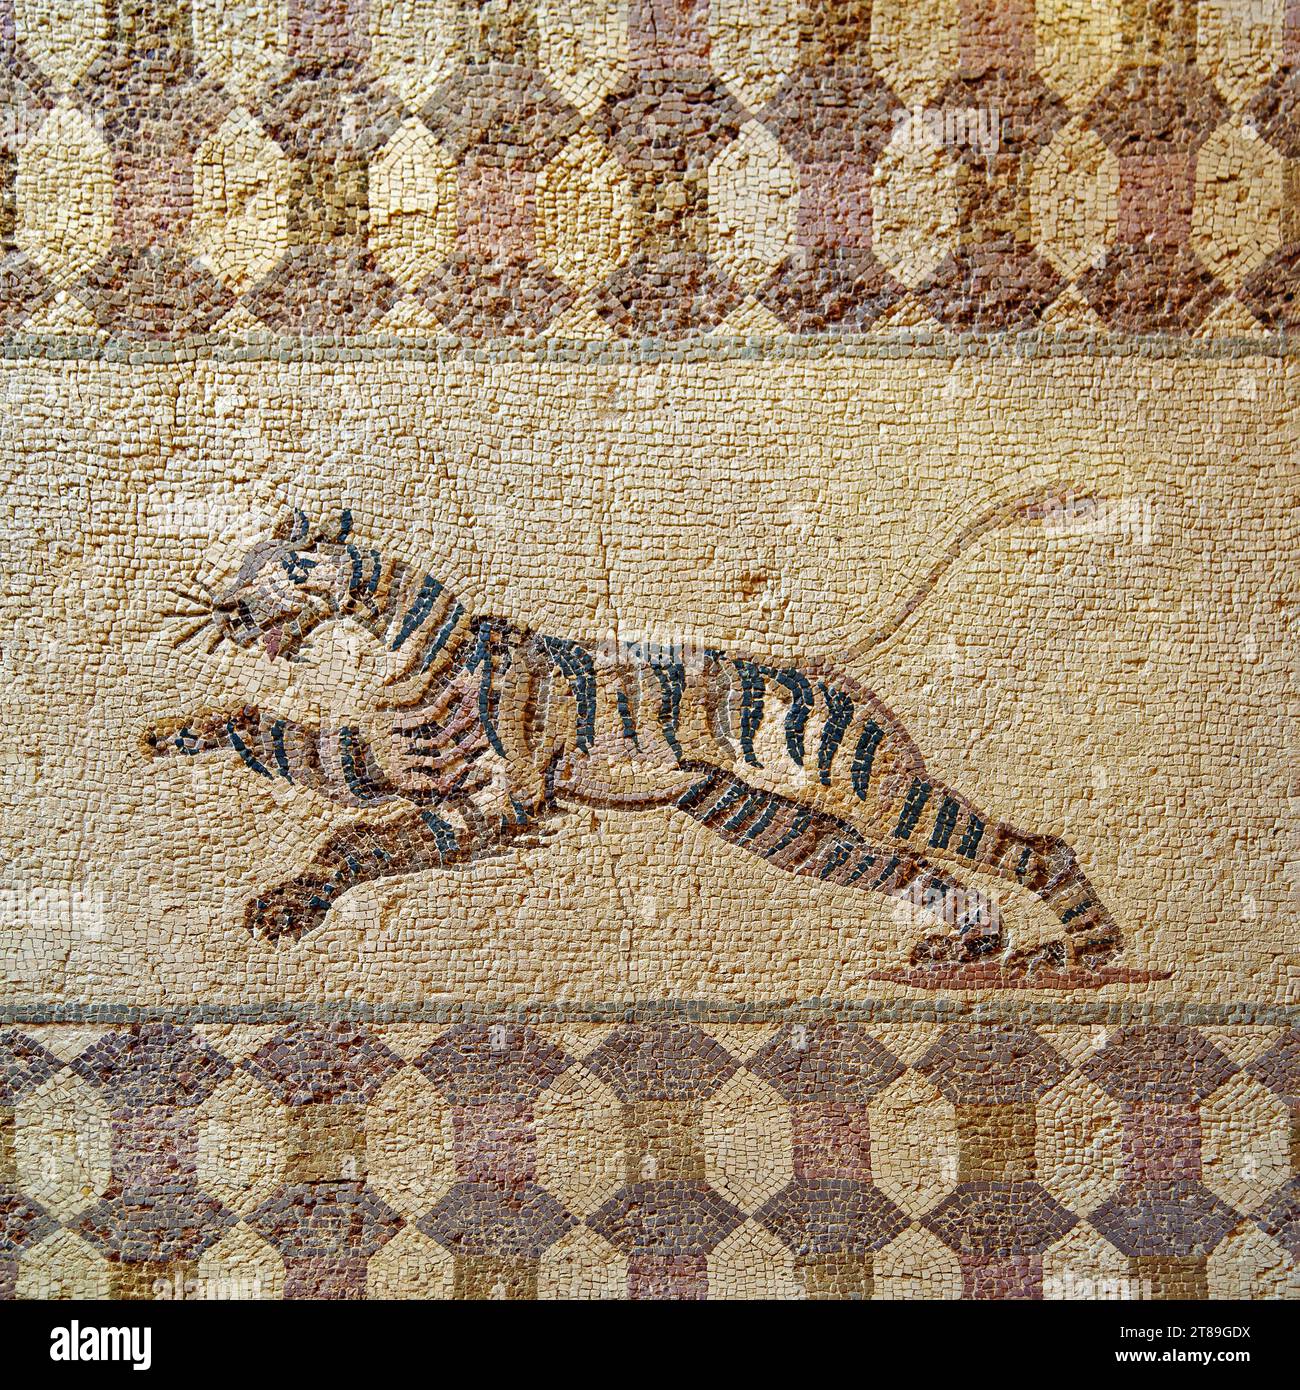 Image d'un tigre sur une mosaïque antique de l'atrium de la maison de Dionysos. La fin du 3e siècle annonce à Paphos. Chypre. Banque D'Images